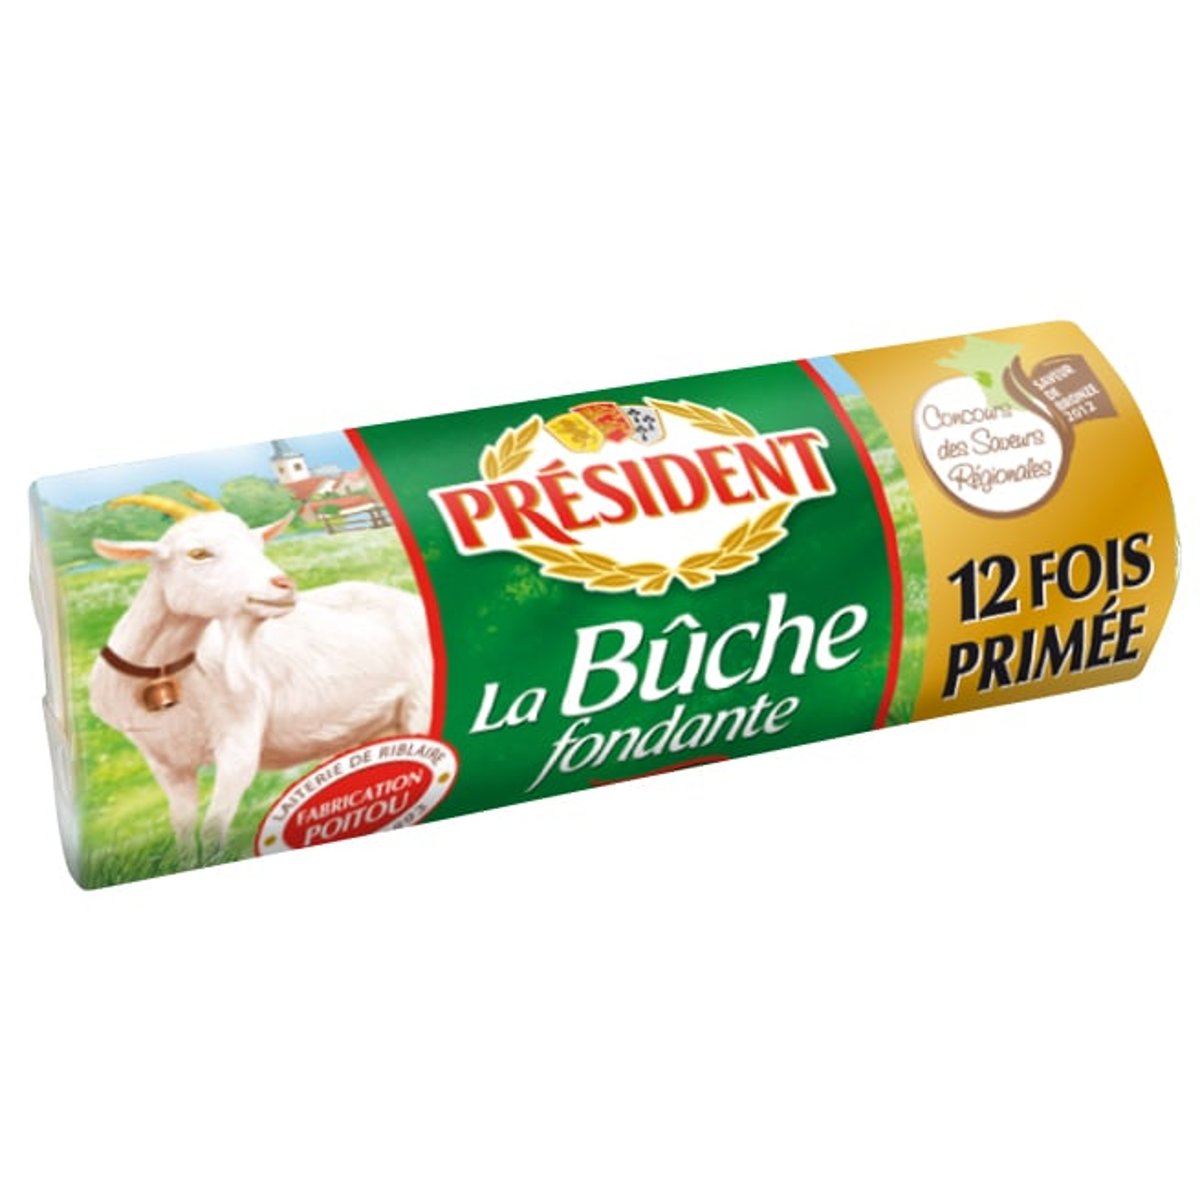 Président La Buche fondante kozí sýr